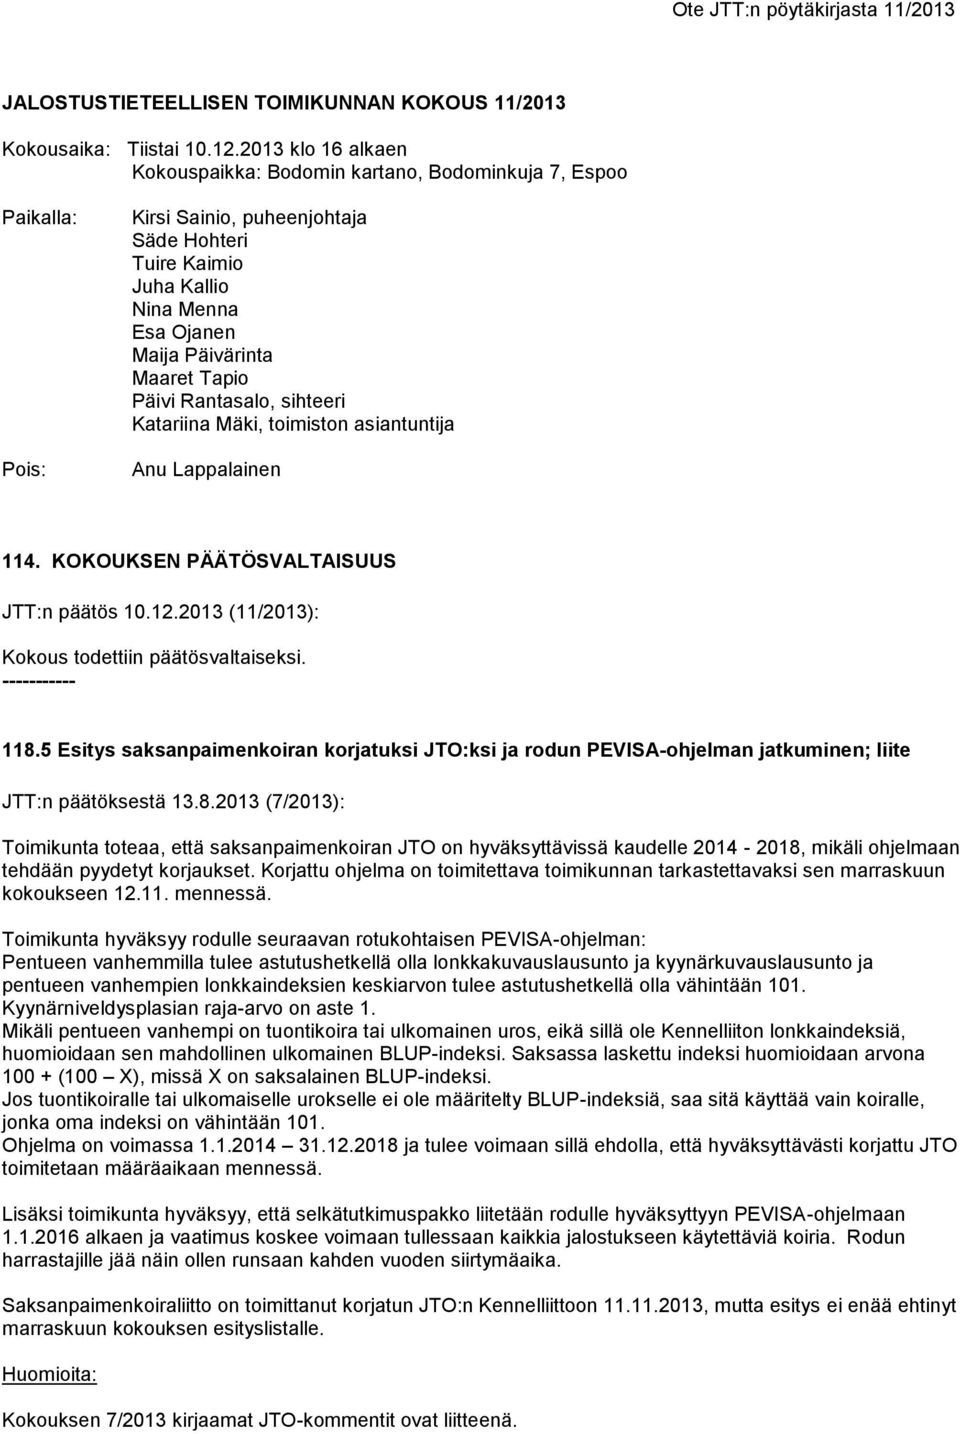 Tapio Päivi Rantasalo, sihteeri Katariina Mäki, toimiston asiantuntija Anu Lappalainen 114. KOKOUKSEN PÄÄTÖSVALTAISUUS JTT:n päätös 10.12.2013 (11/2013): Kokous todettiin päätösvaltaiseksi.